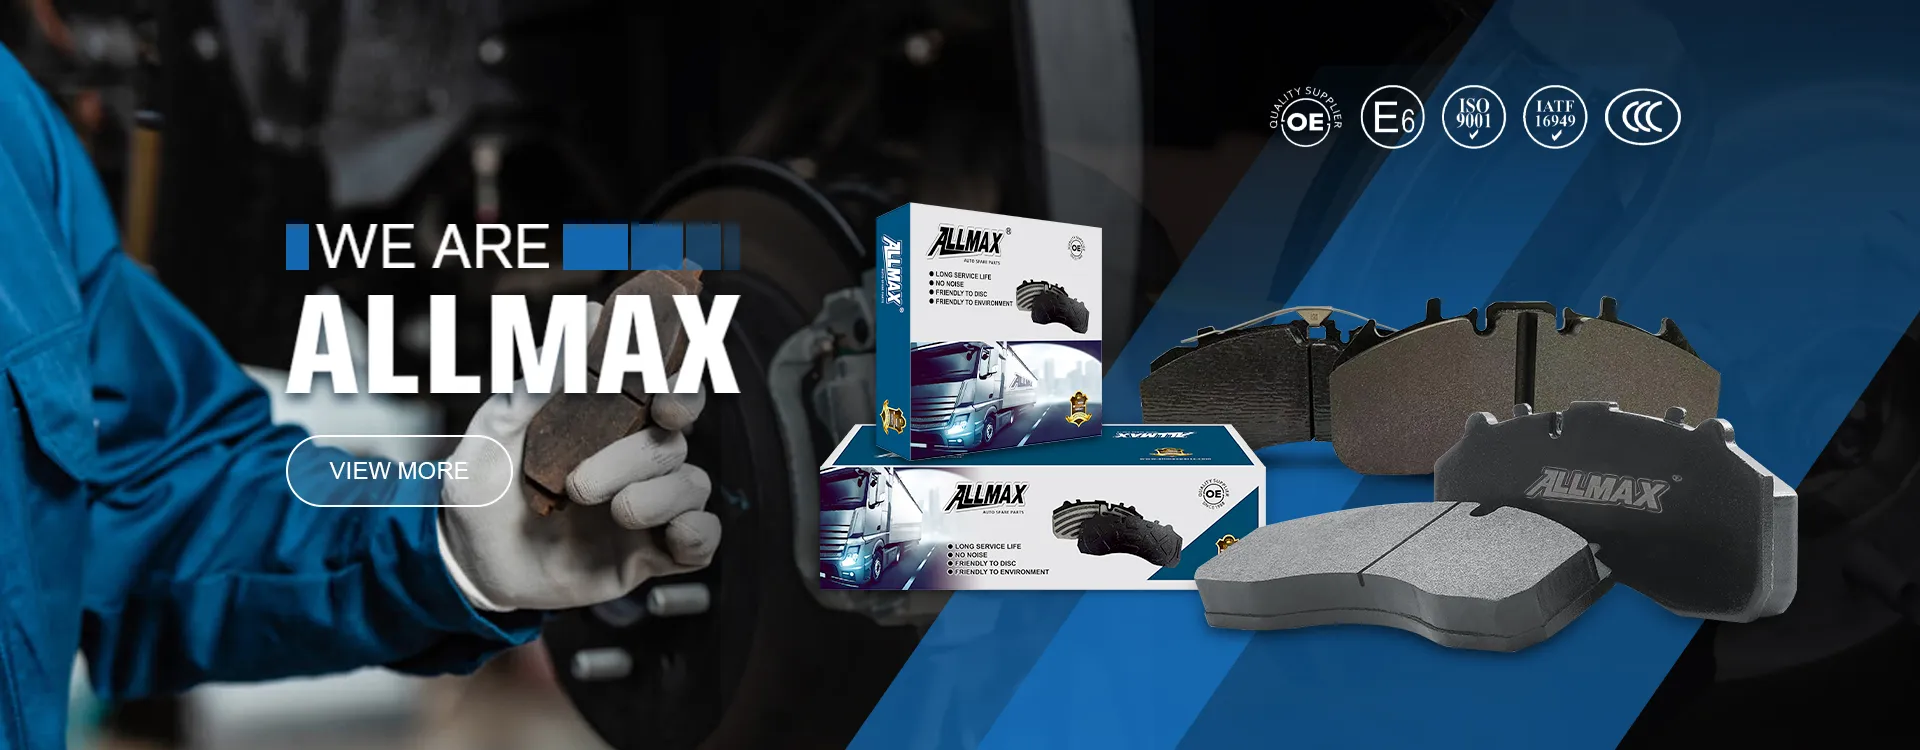 Циндао Allmax Auto Parts Co., Ltd.